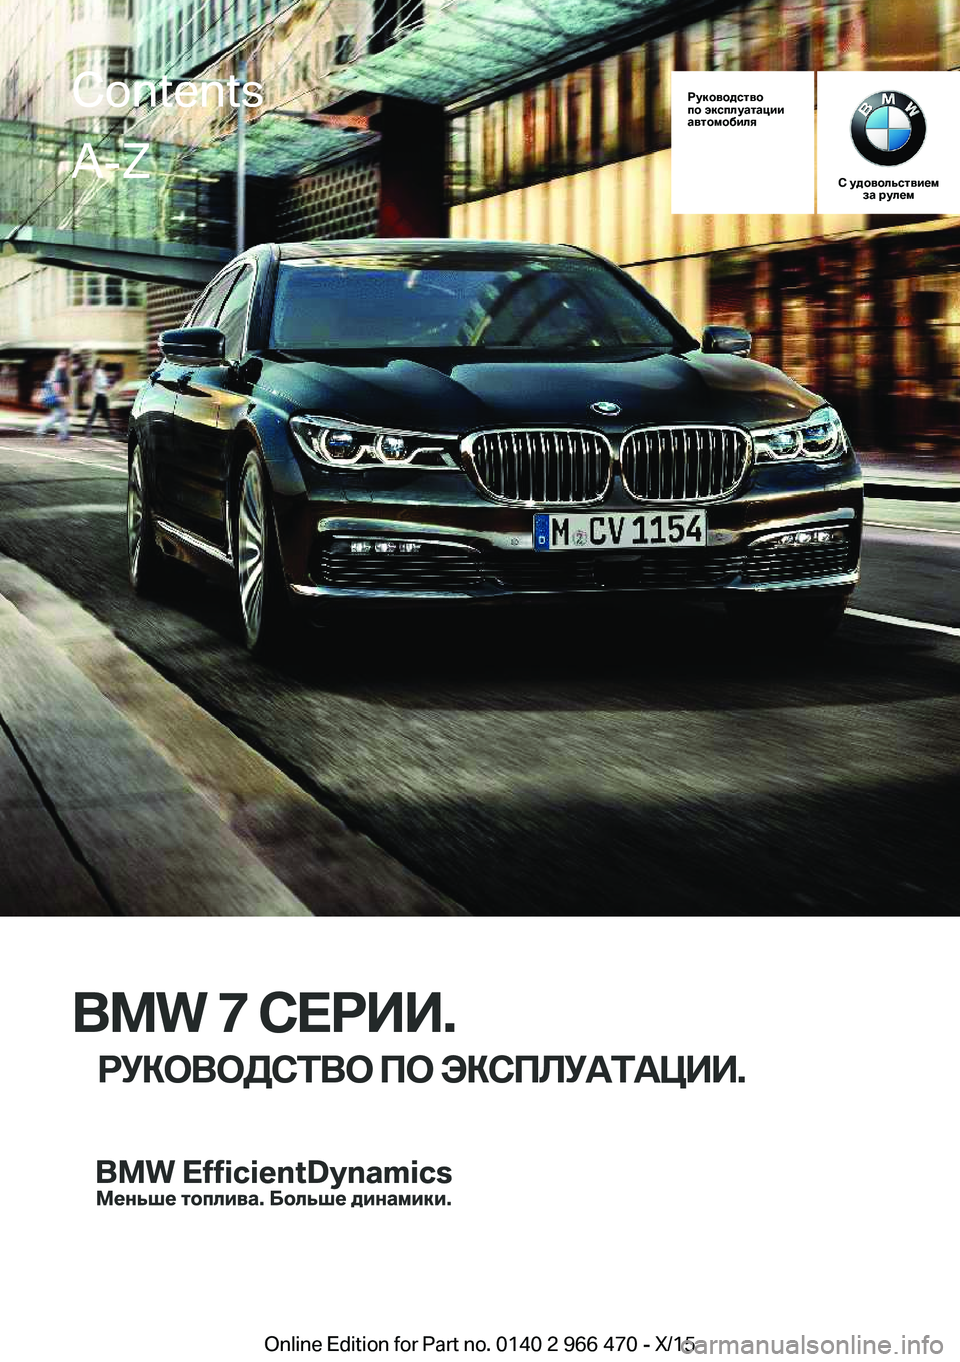 BMW 7 SERIES 2016  Руково Руководство
по эксплуатации
автомобиля
С удовольствием за рулем
BMW 7 СЕРИИ.
РУКОВОДСТВО ПО ЭКСПЛУАТАЦИИ.
Contents